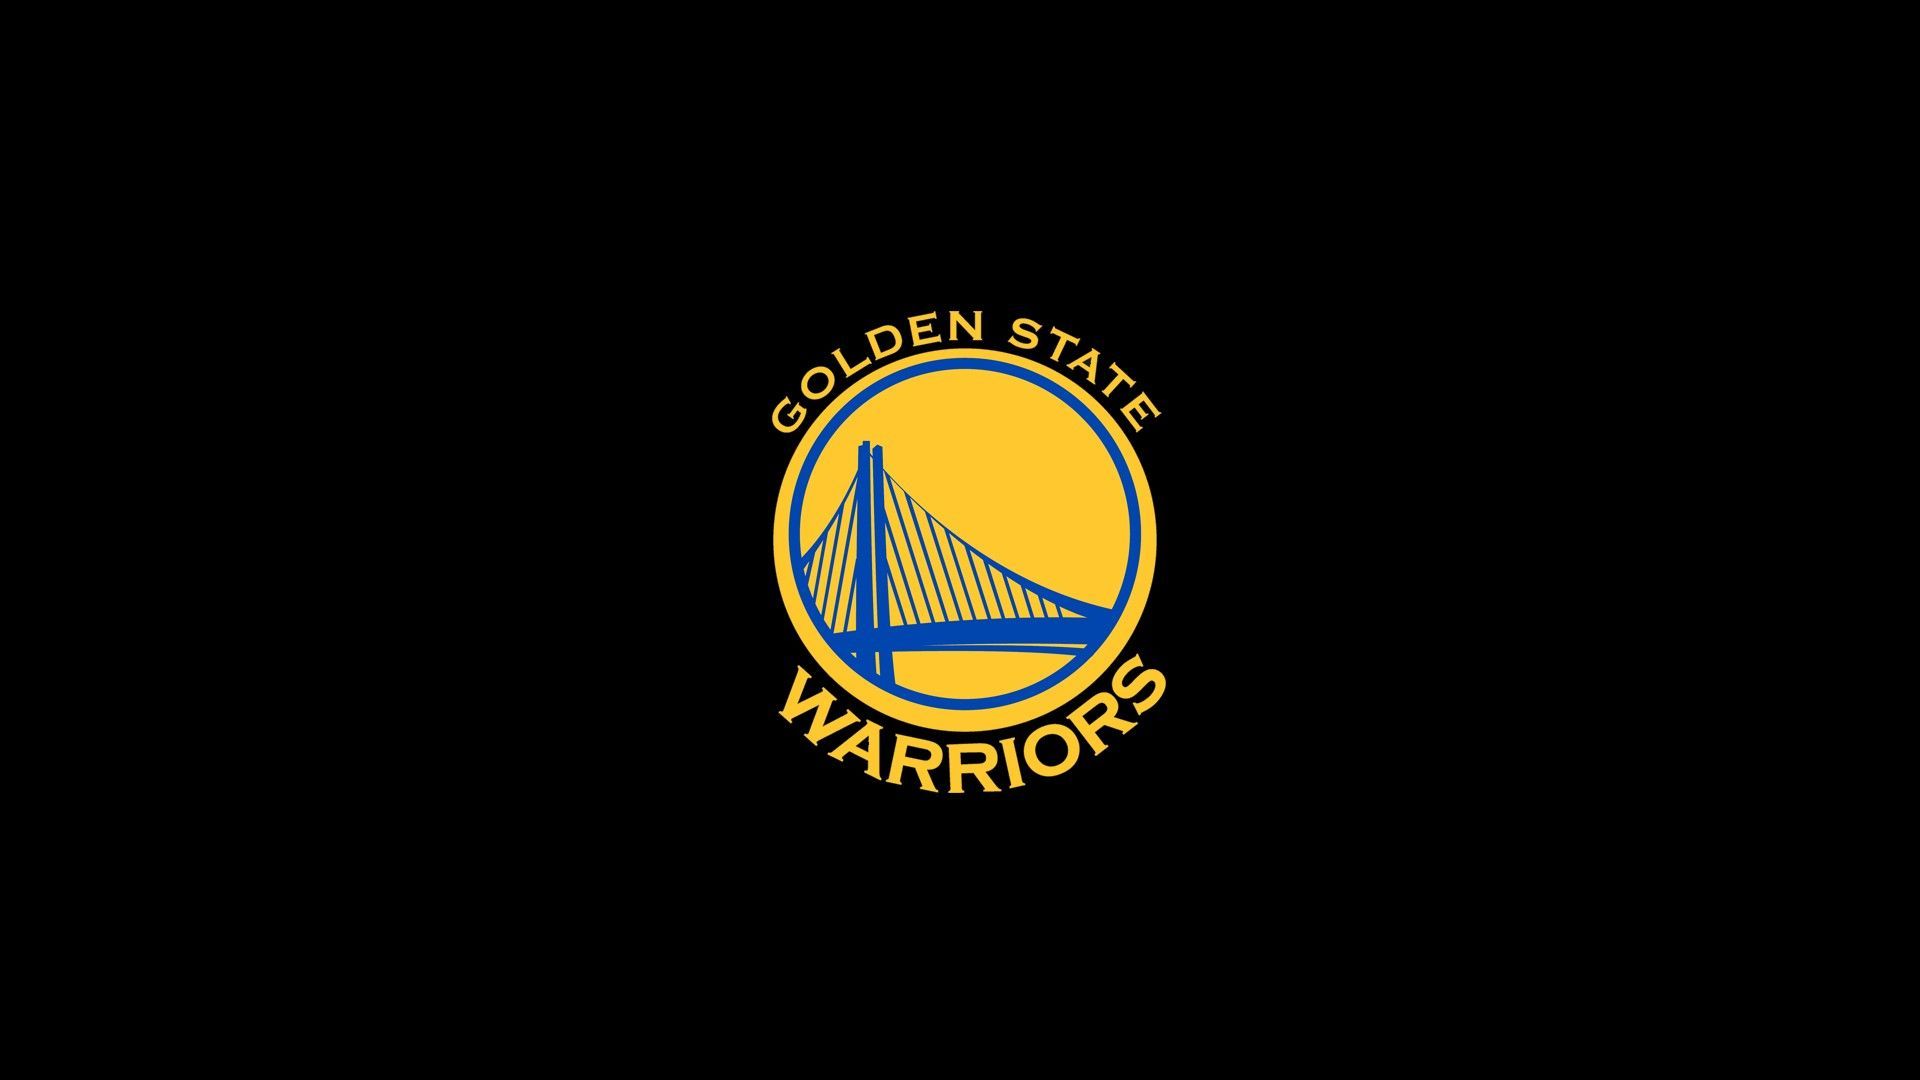 Golden State Warriors Logo Desktop Wallpaper is the perfect High